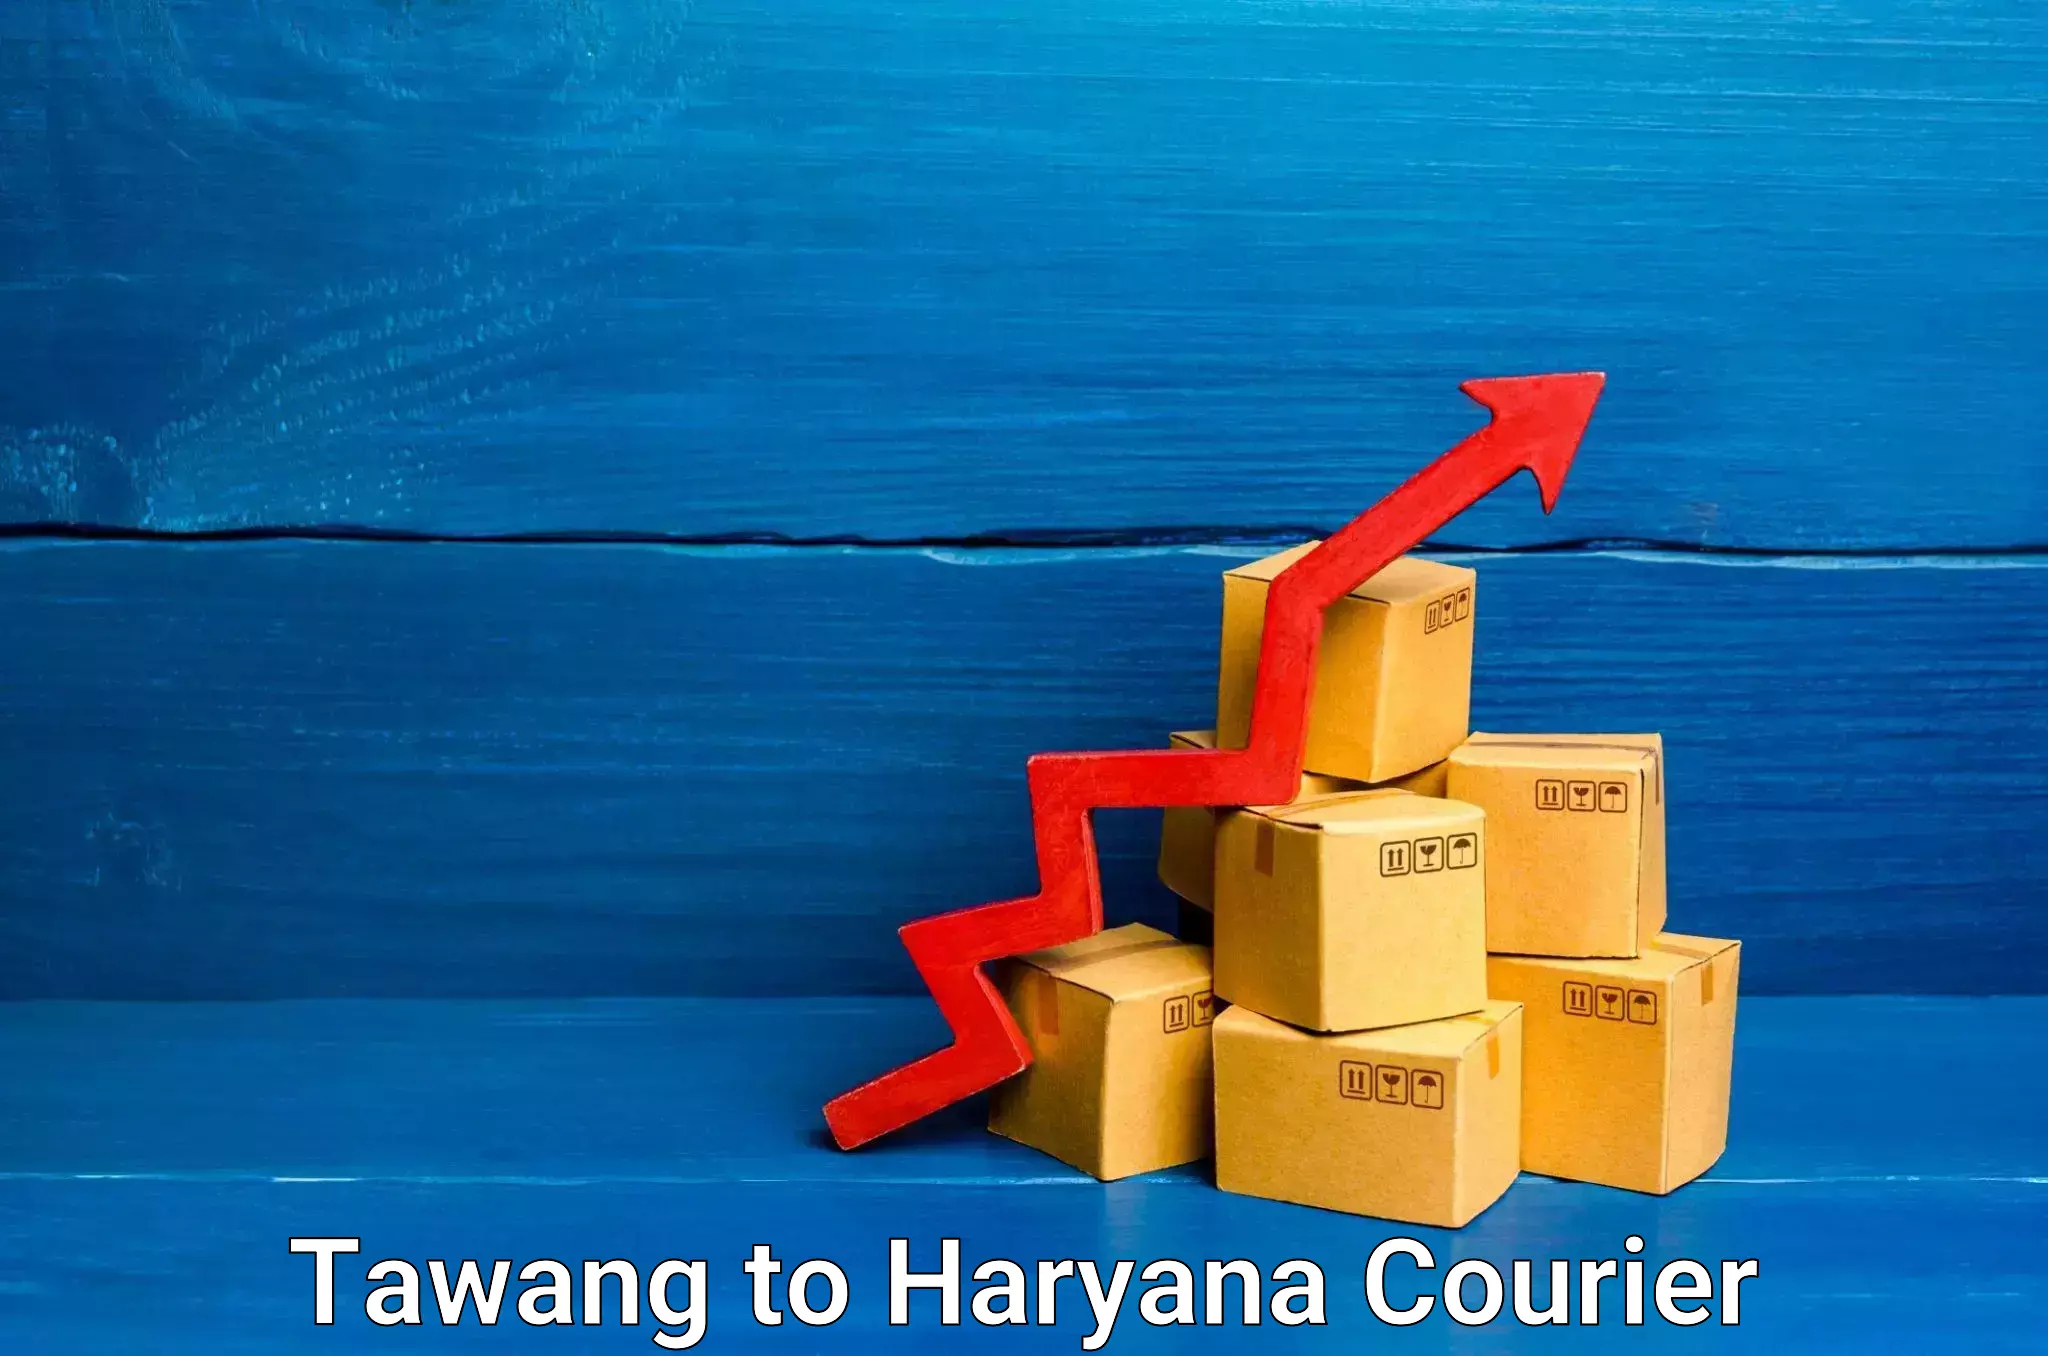 High-capacity shipping options Tawang to Chaudhary Charan Singh Haryana Agricultural University Hisar